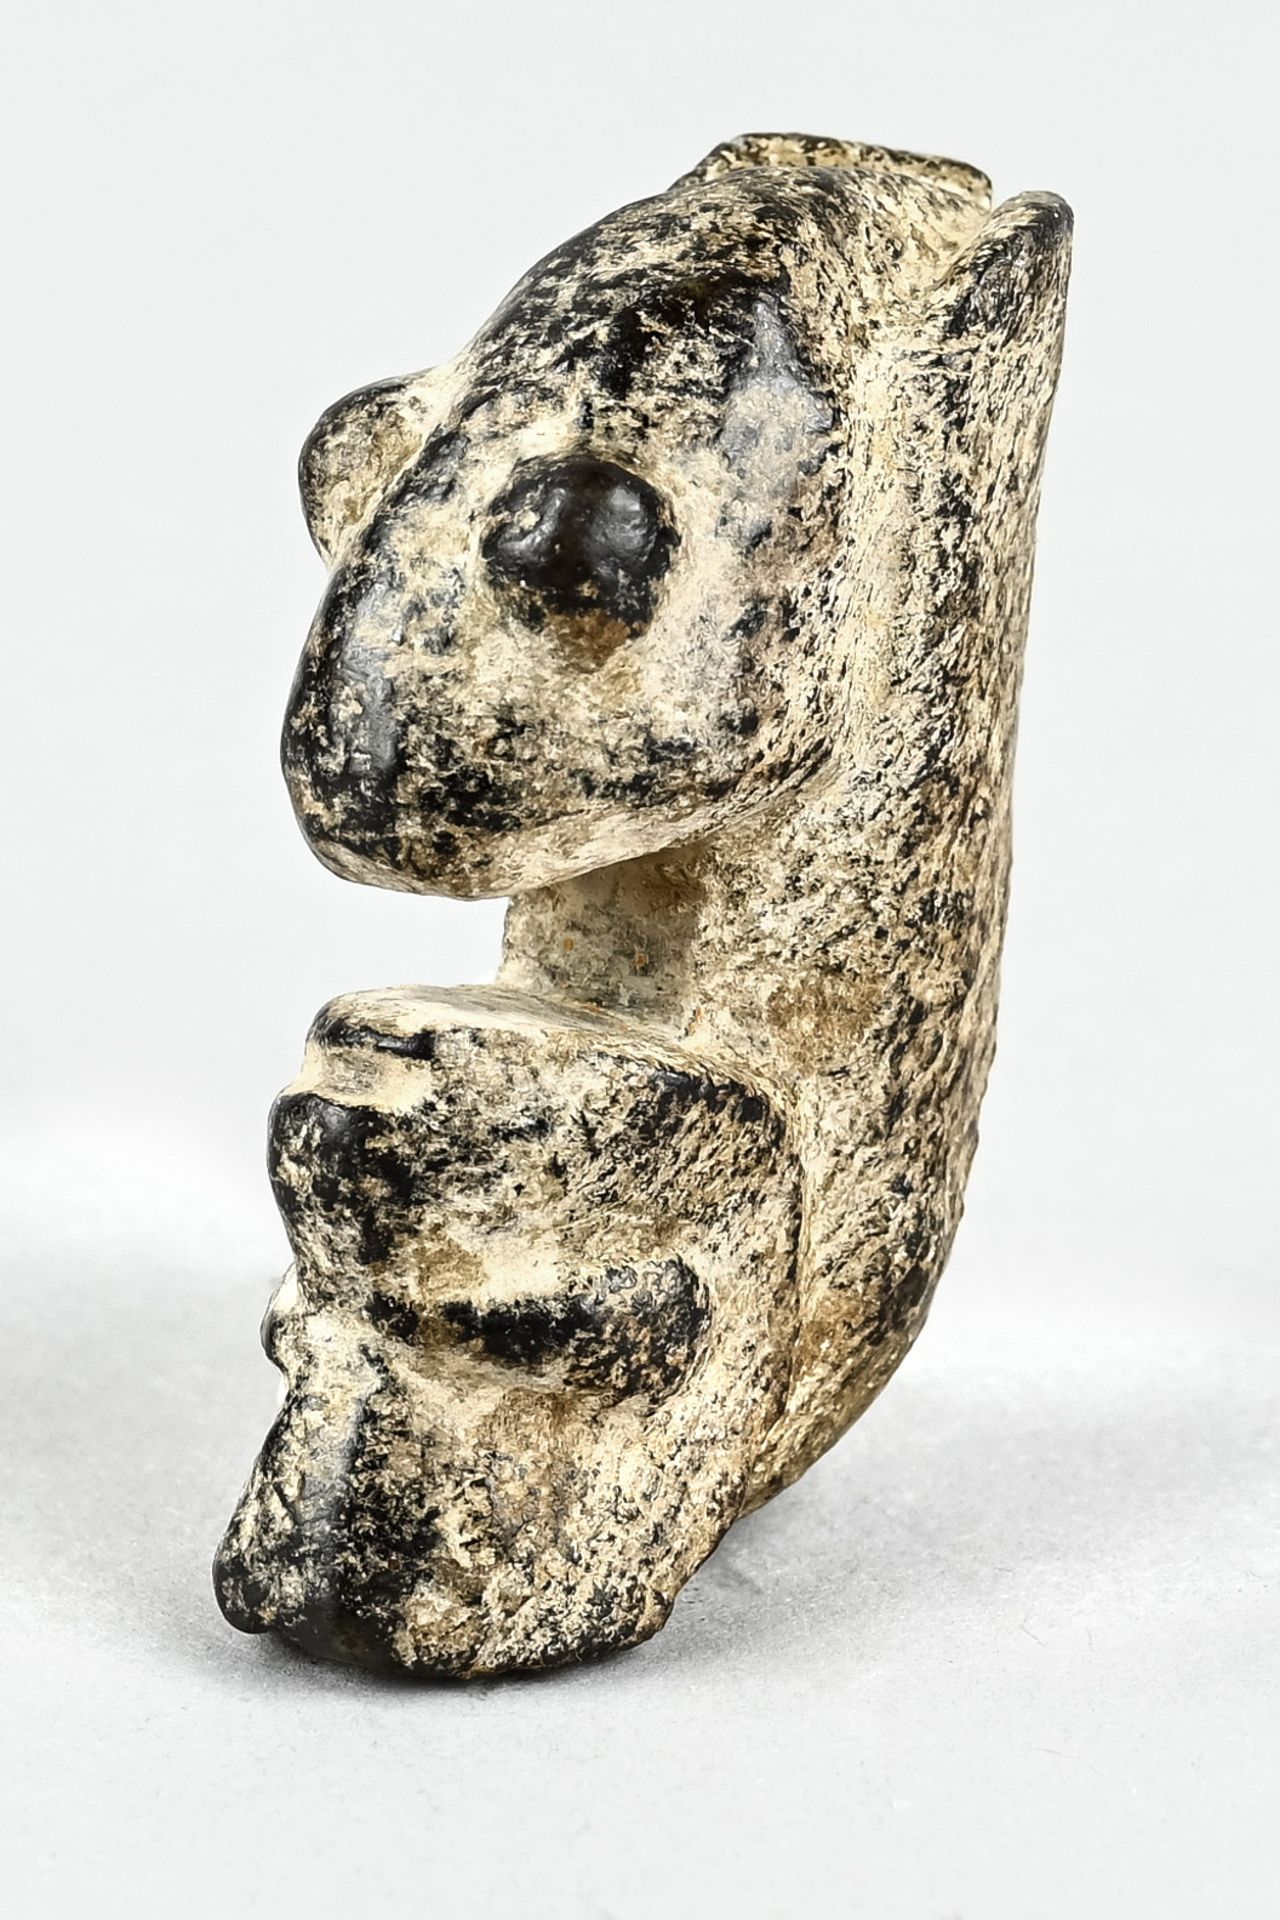 Hongshang amulet, China, animal like fantasy figure, jade with patina, - Image 2 of 3